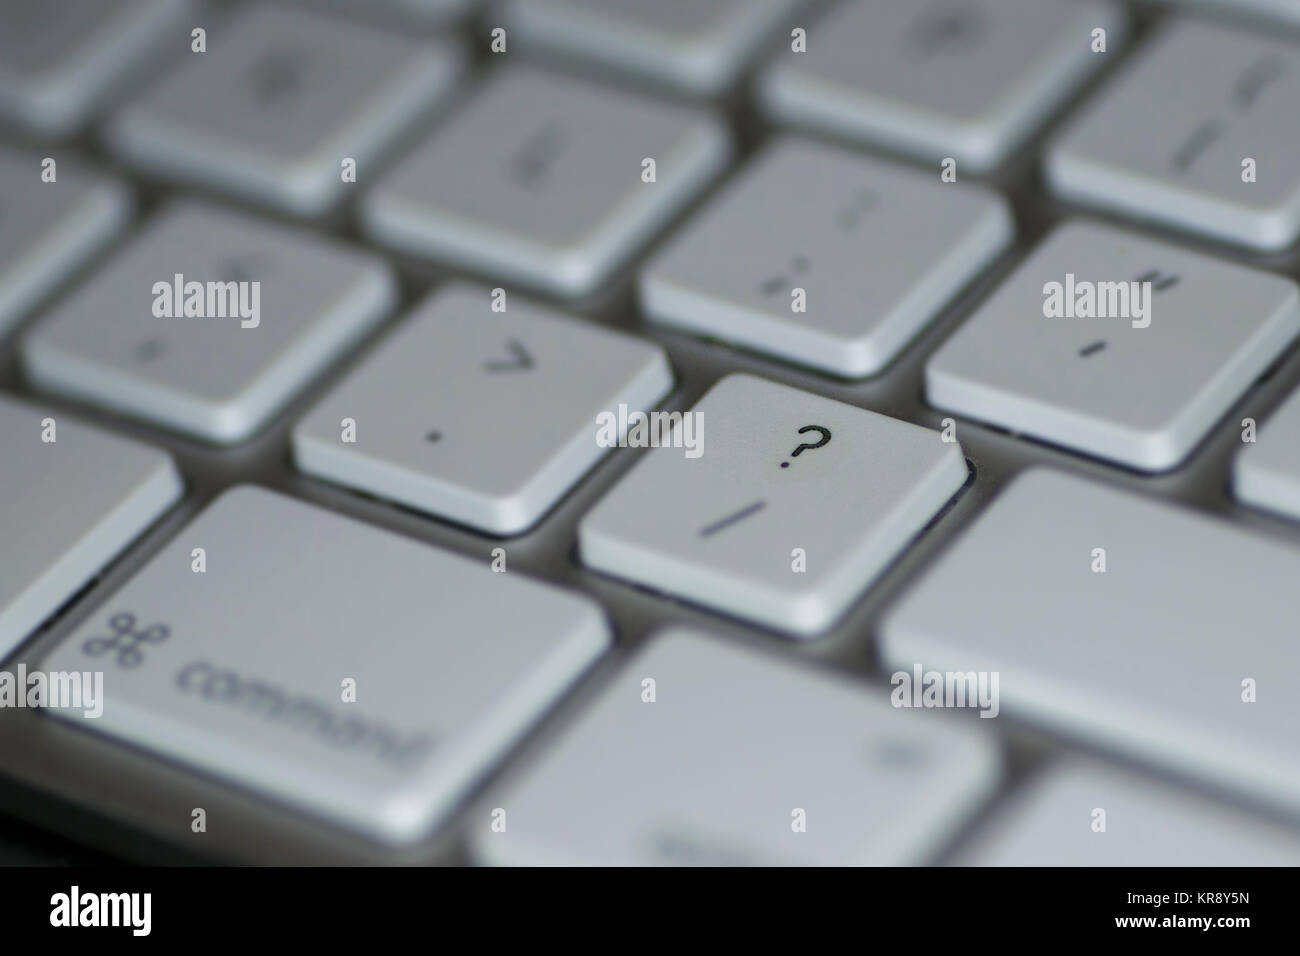 Vista dettagliata del punto interrogativo chiave sul computer tastiera con tasti bianchi su sfondo scuro Foto Stock